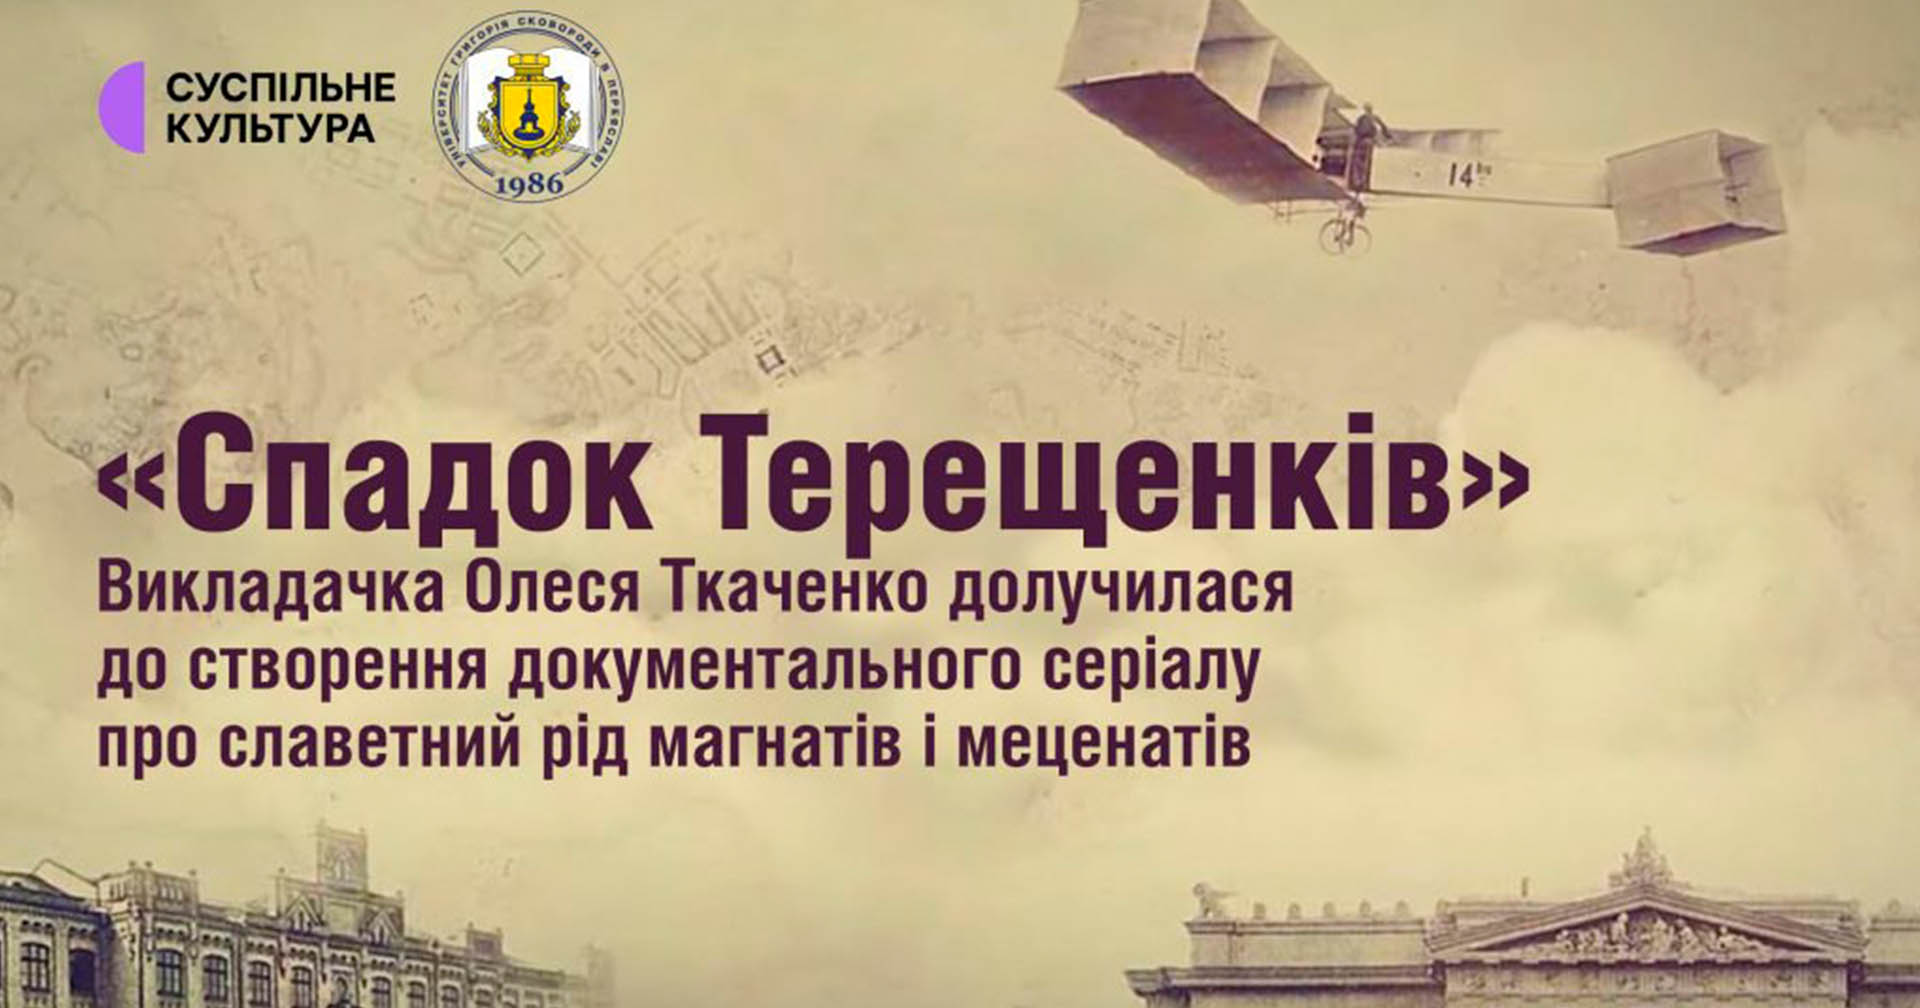 Історикиня з переяславського університету долучилася до створення першого українського документального серіалу «Спадок Терещенків»